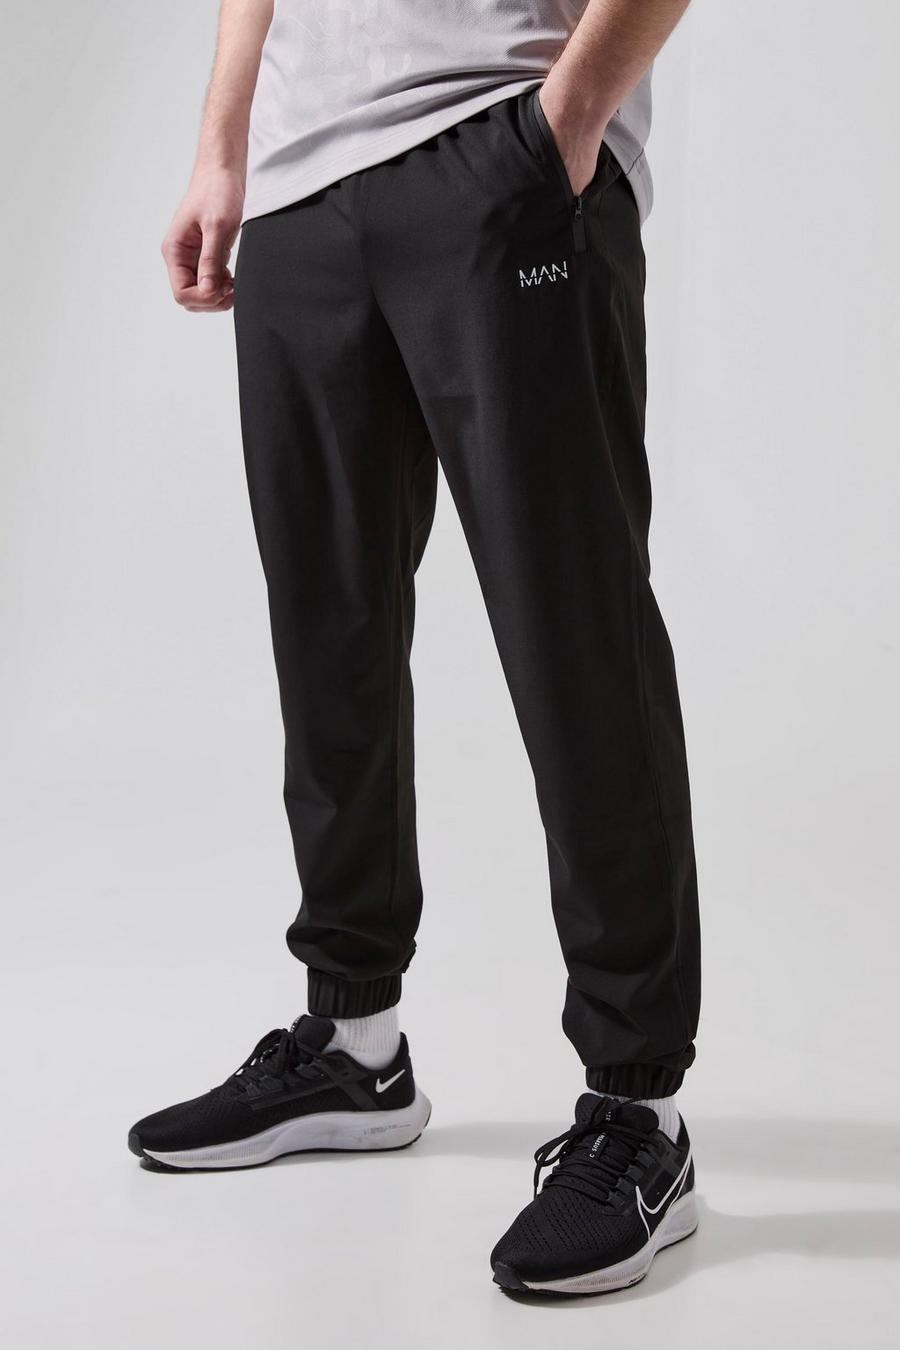 Pantalón deportivo Tall MAN Active ajustado, Black image number 1